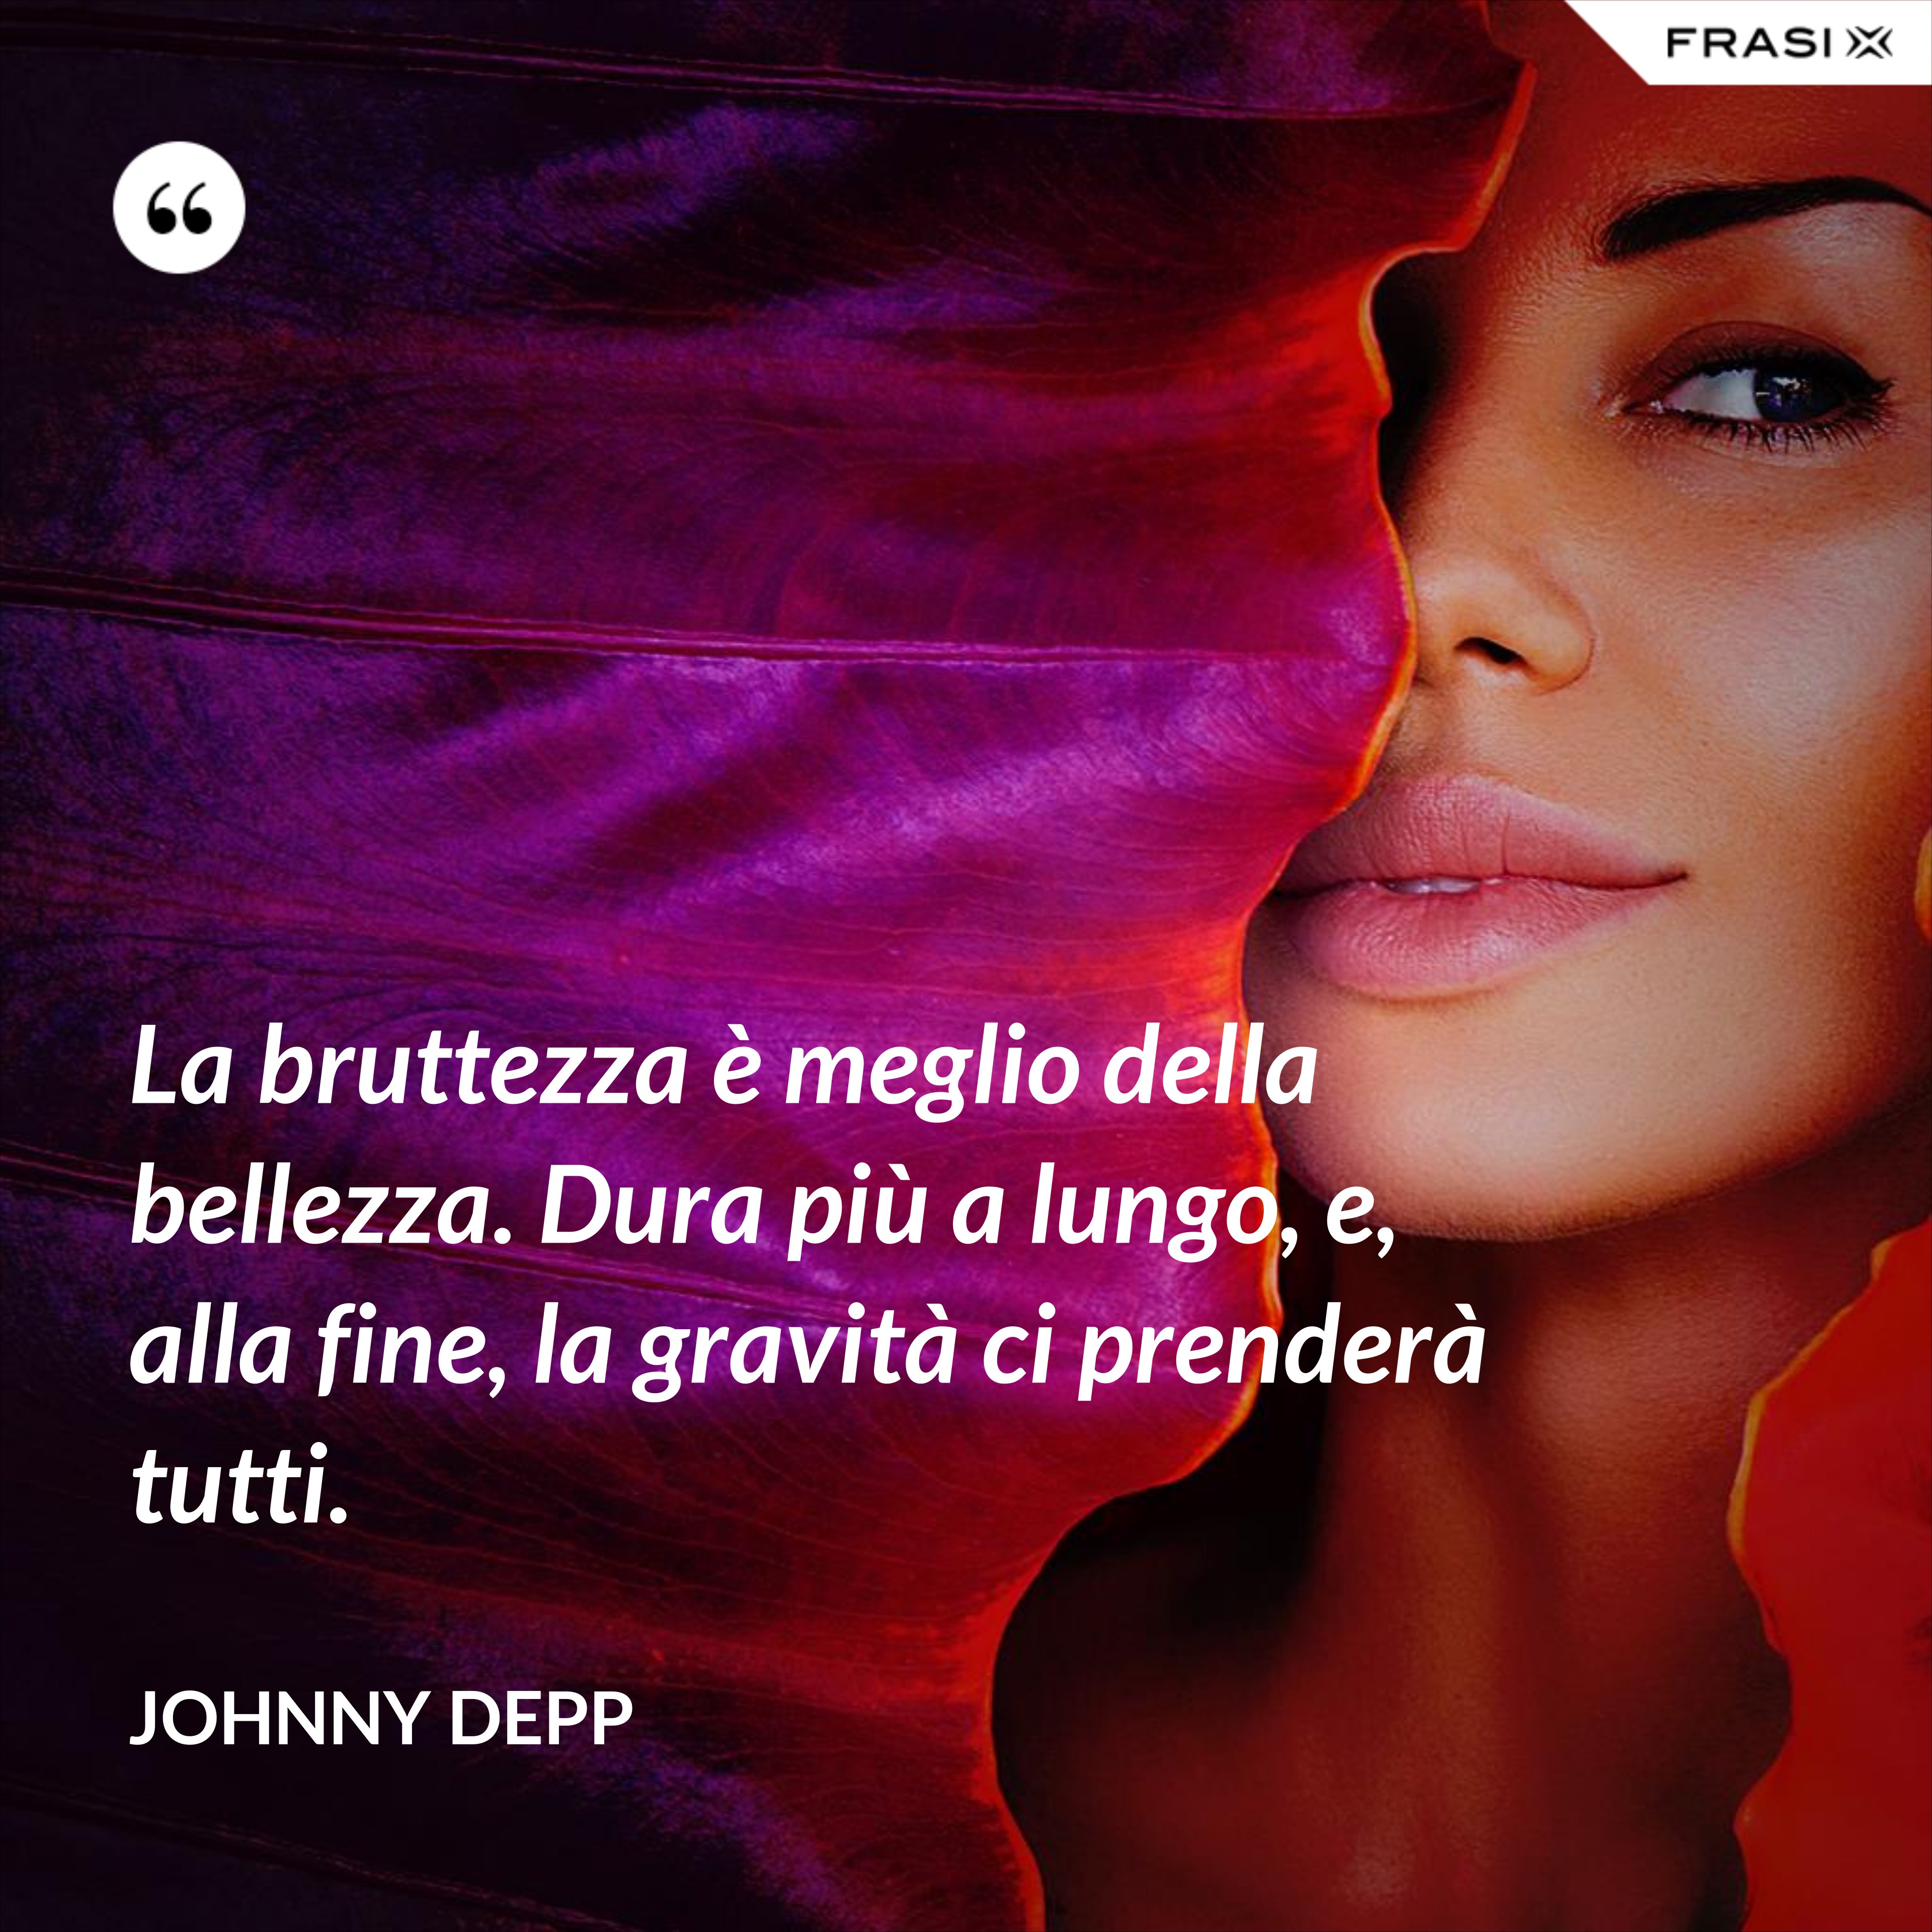 La bruttezza è meglio della bellezza. Dura più a lungo, e, alla fine, la gravità ci prenderà tutti. - Johnny Depp